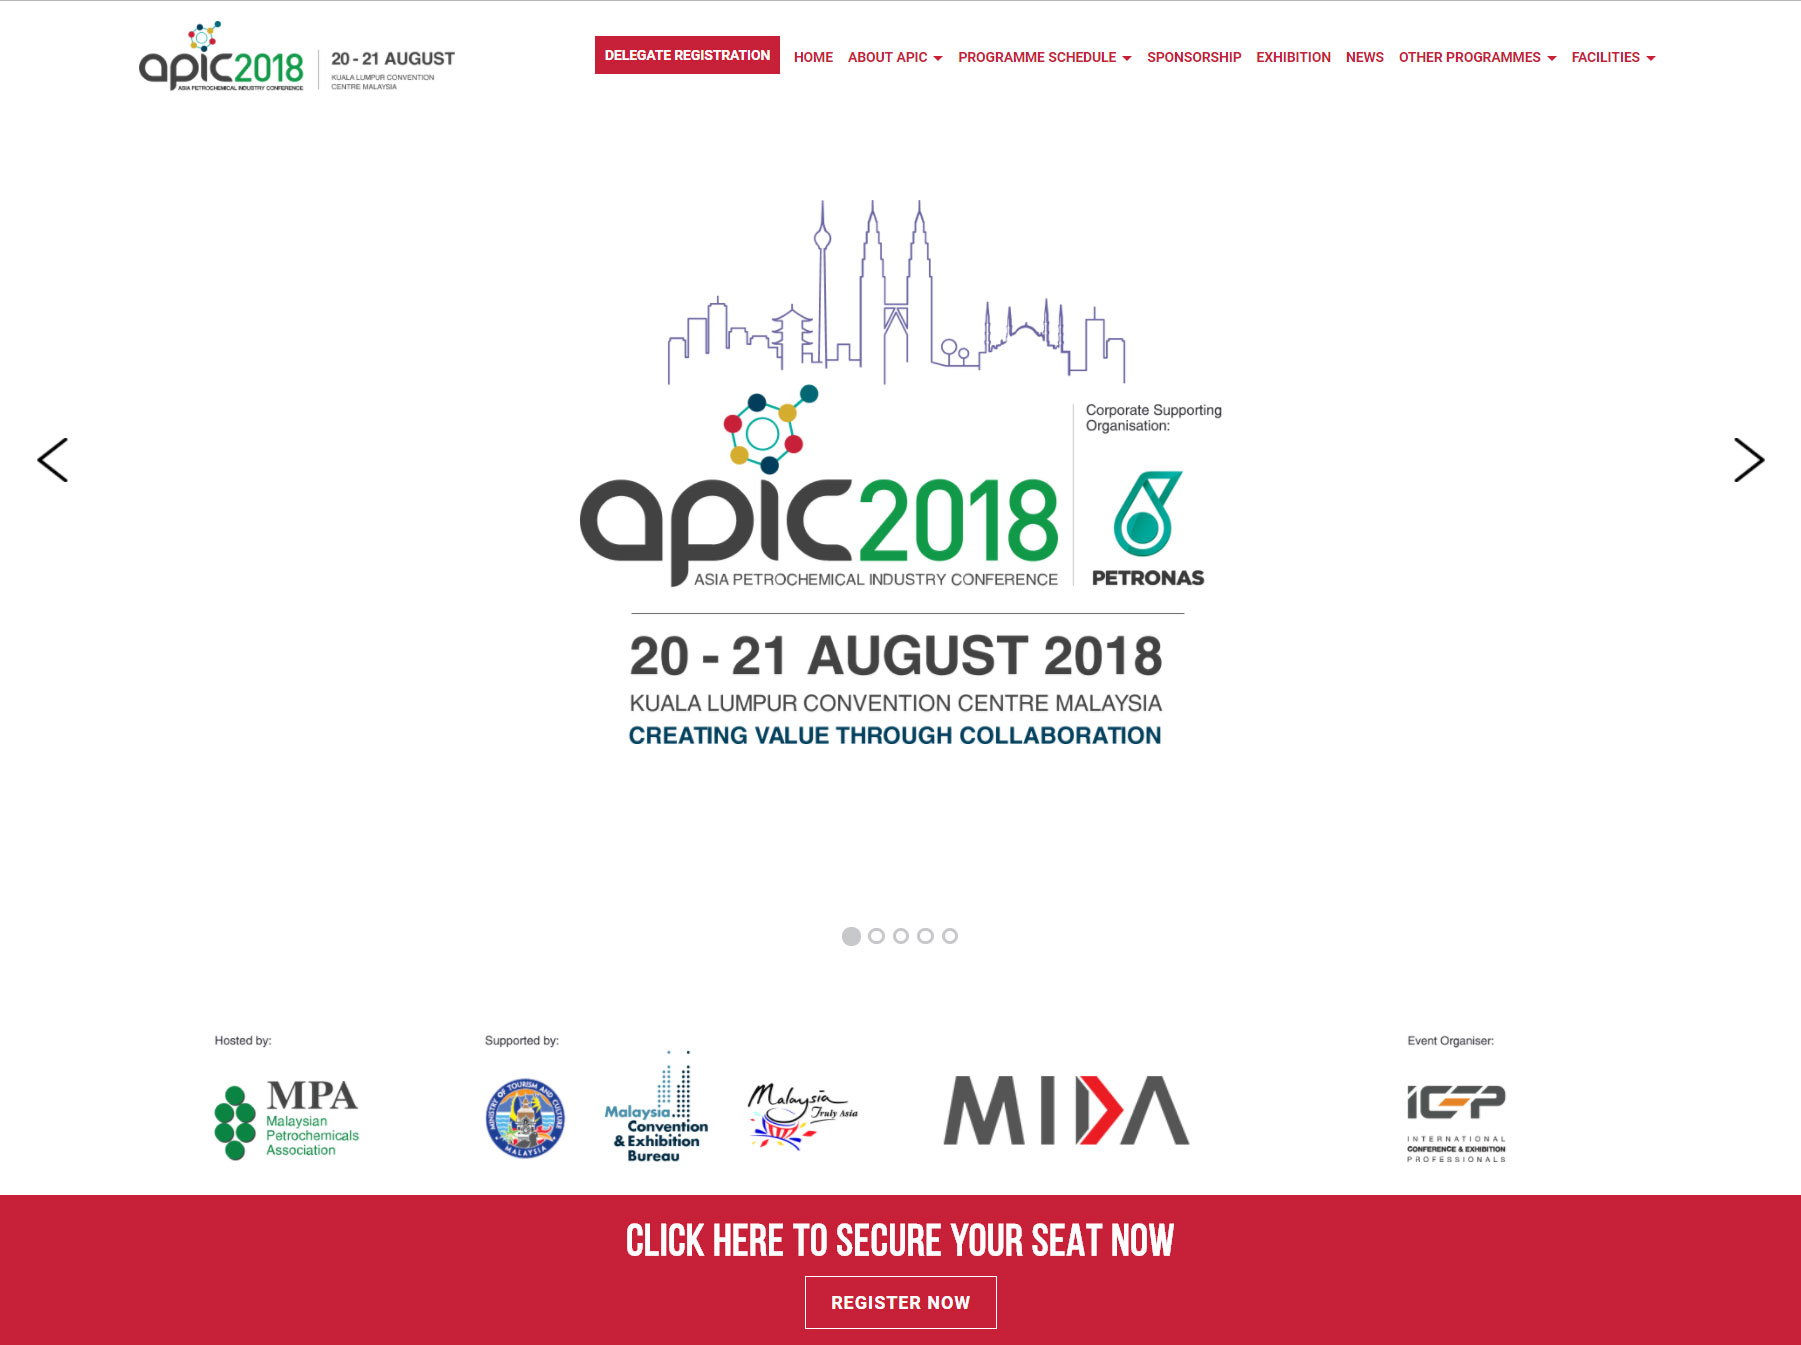 APIC 2018 Microsite